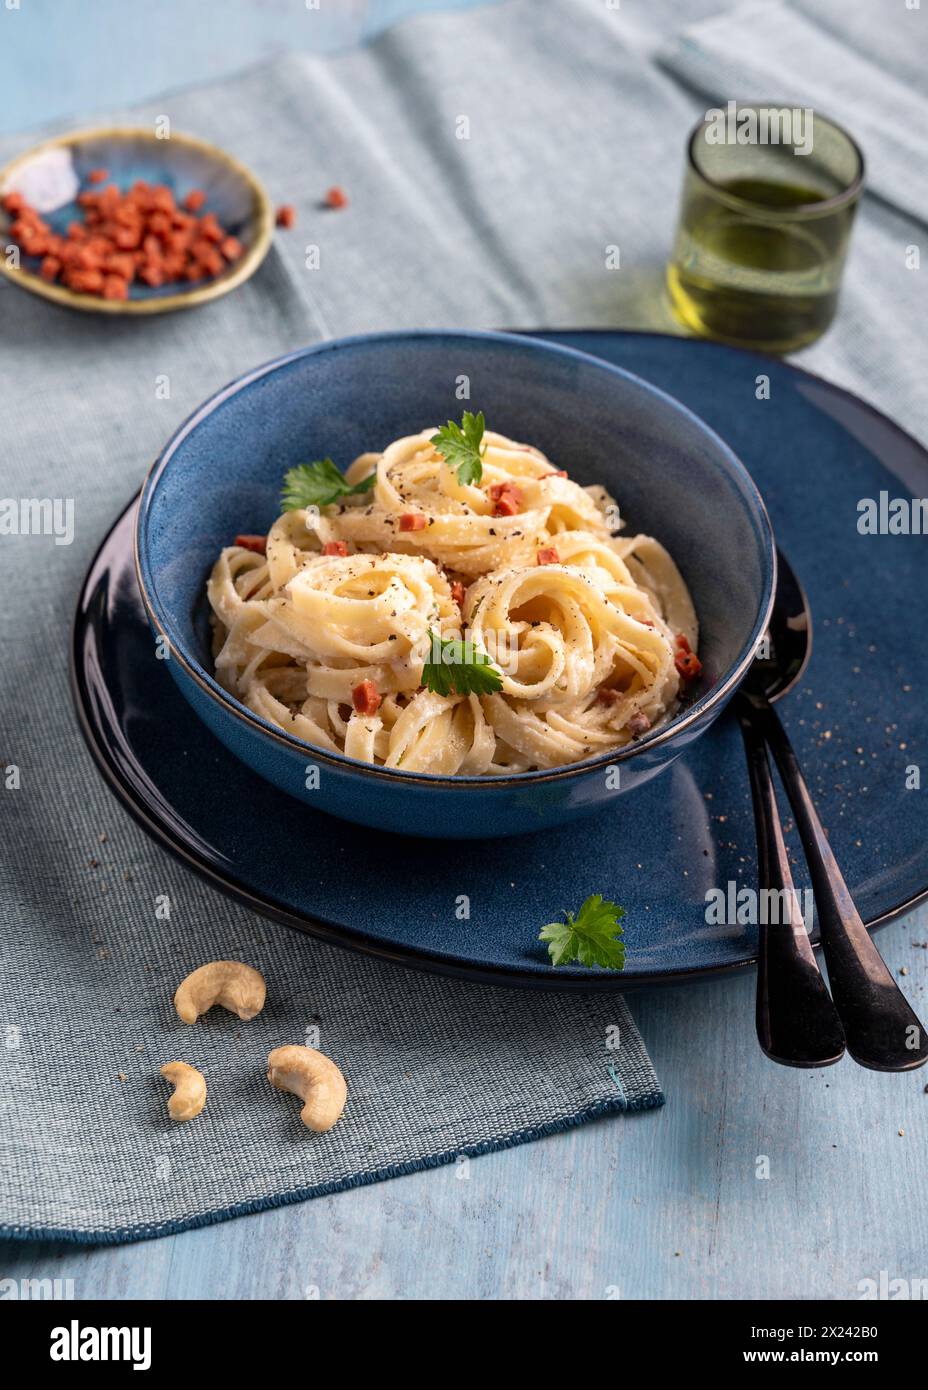 Vegan pasta carbonara with cashew cream and ham substitute Stock Photo